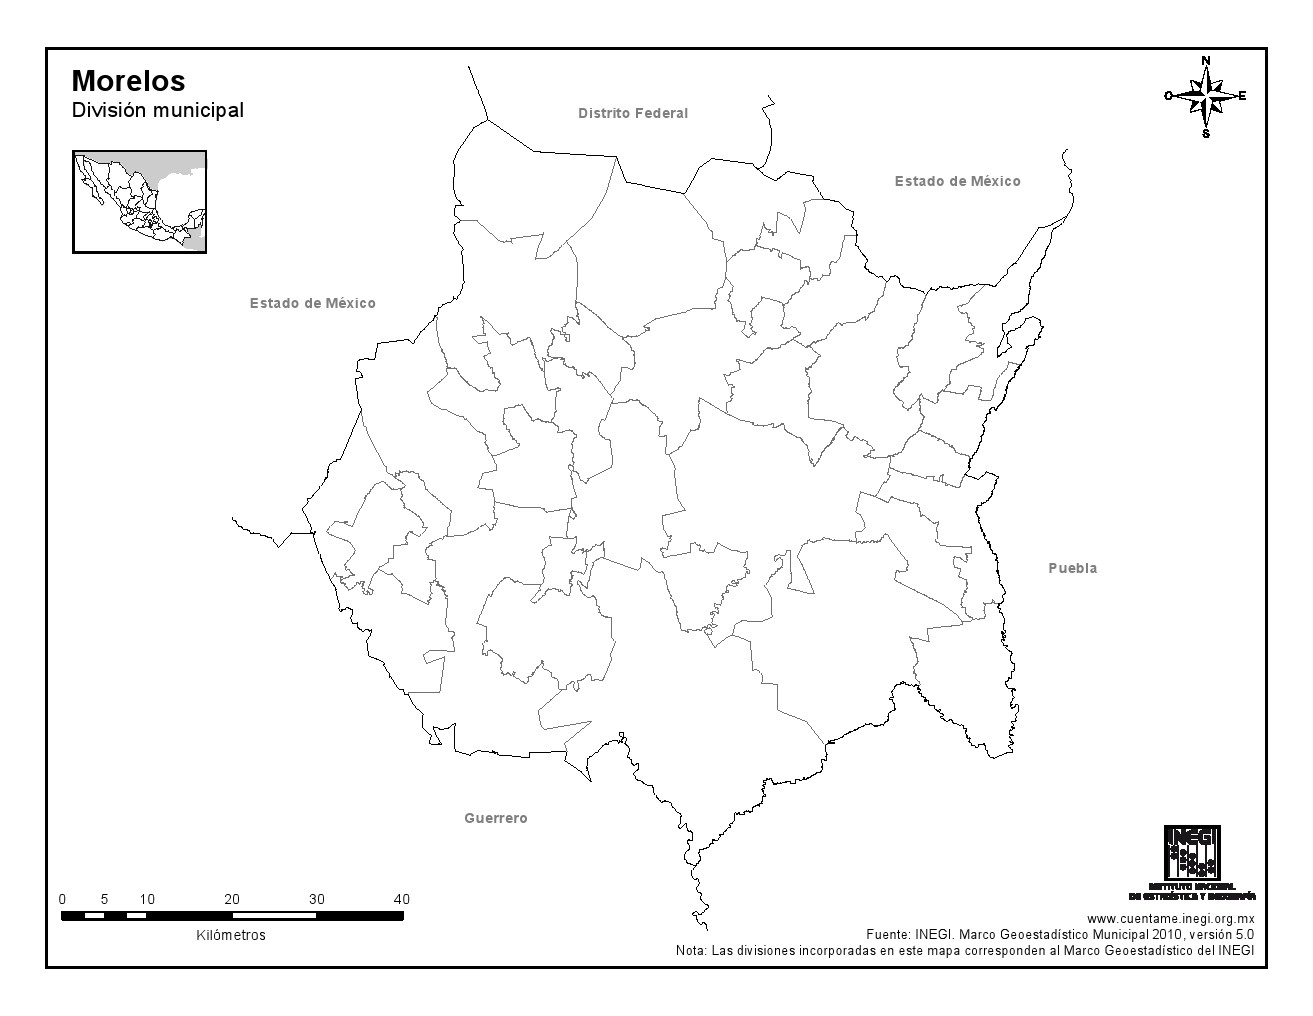 Mapa mudo de municipios de Morelos. INEGI de México